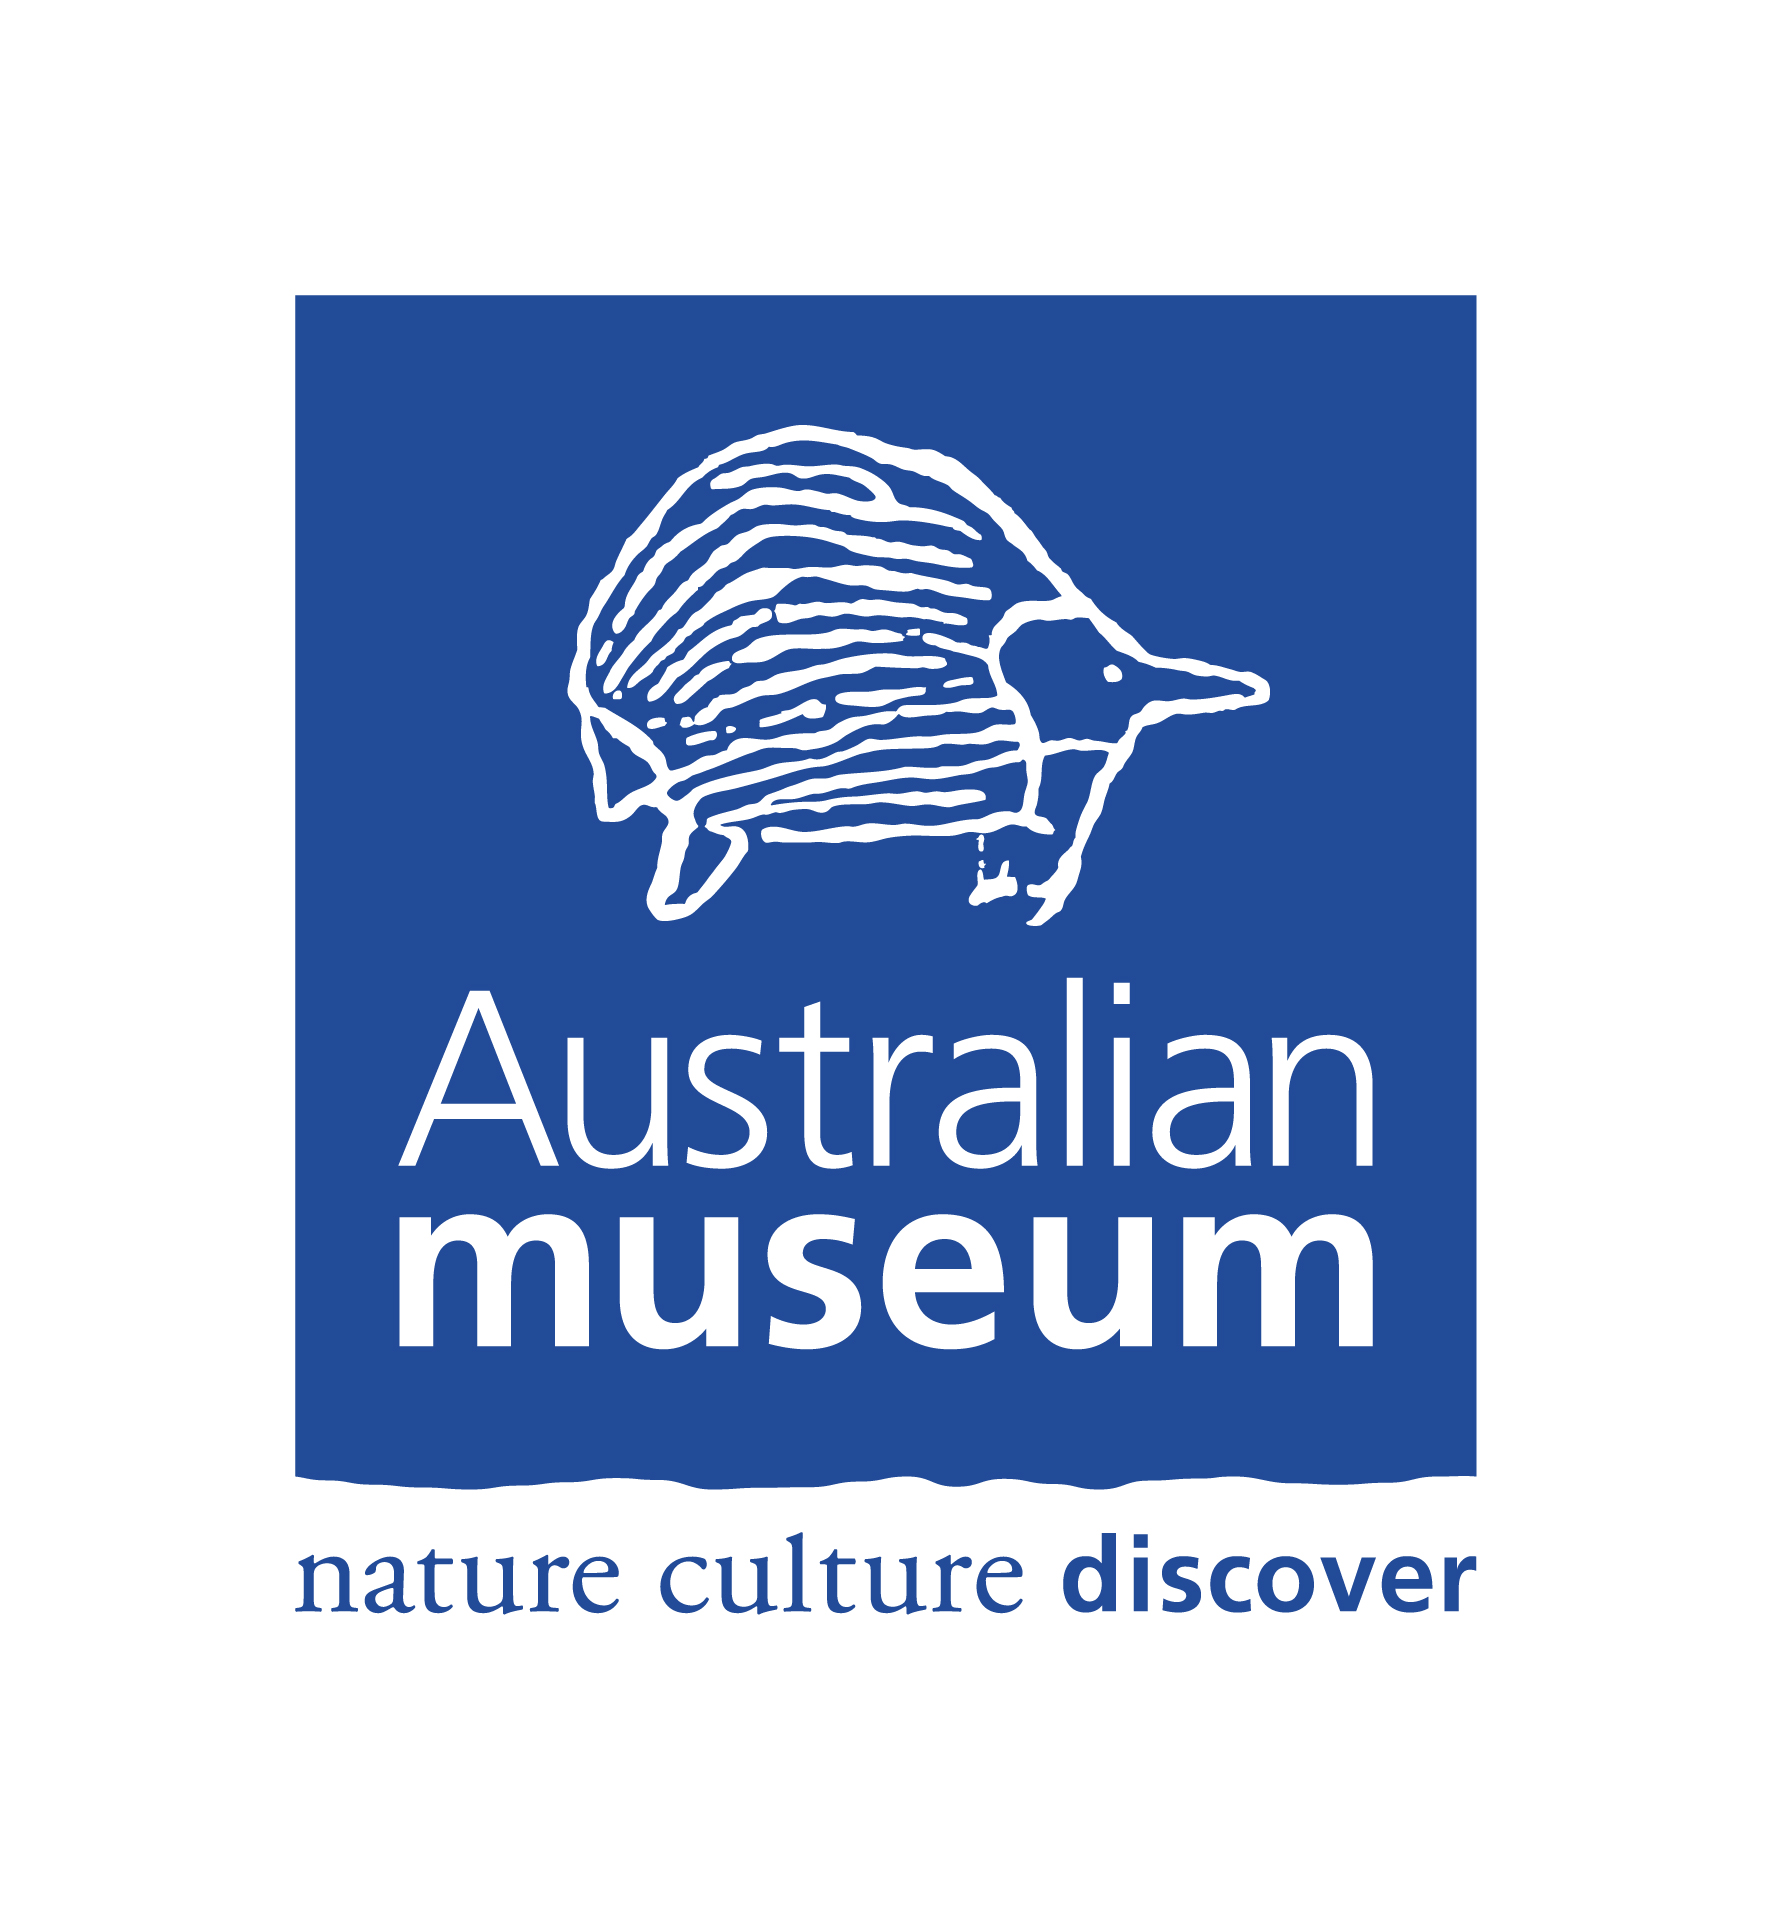 AustralianMuseum logo.jpg